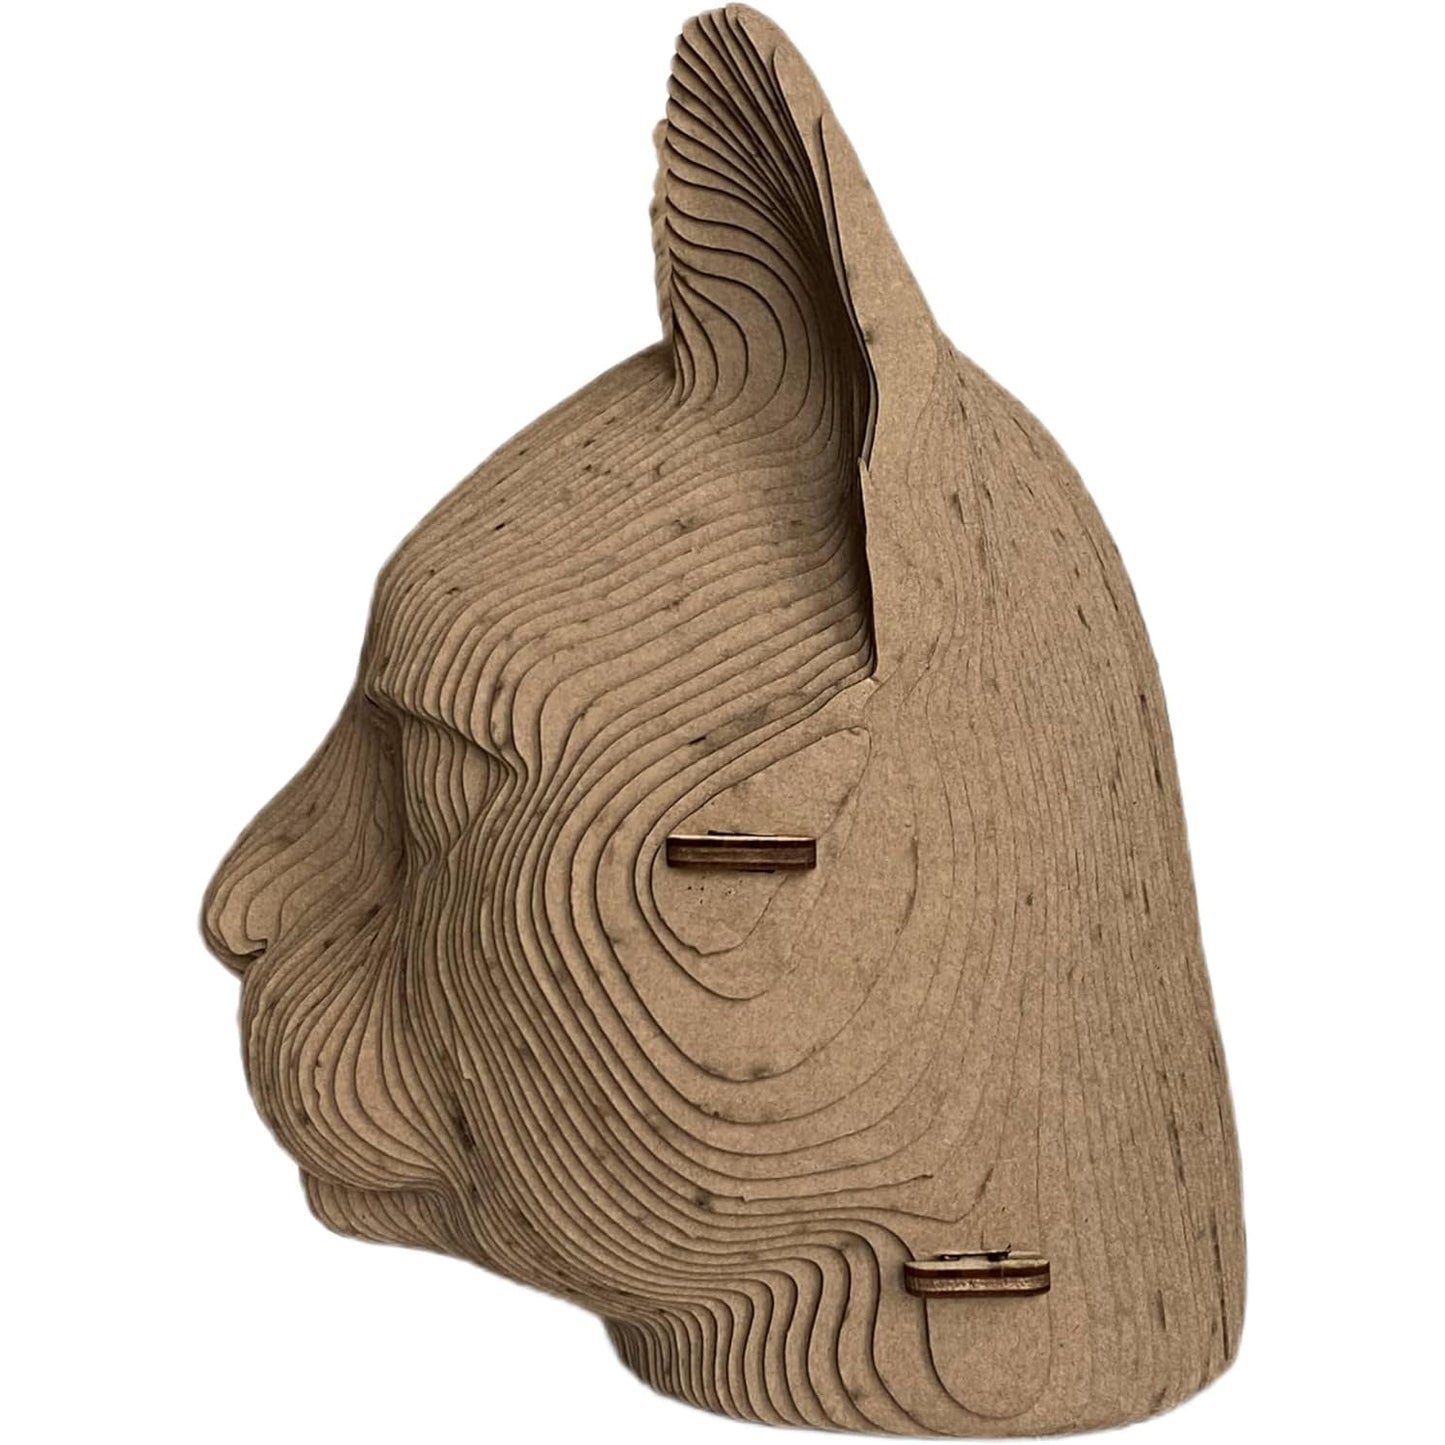 3D head sculpture made of corrugated cardboard - Cat